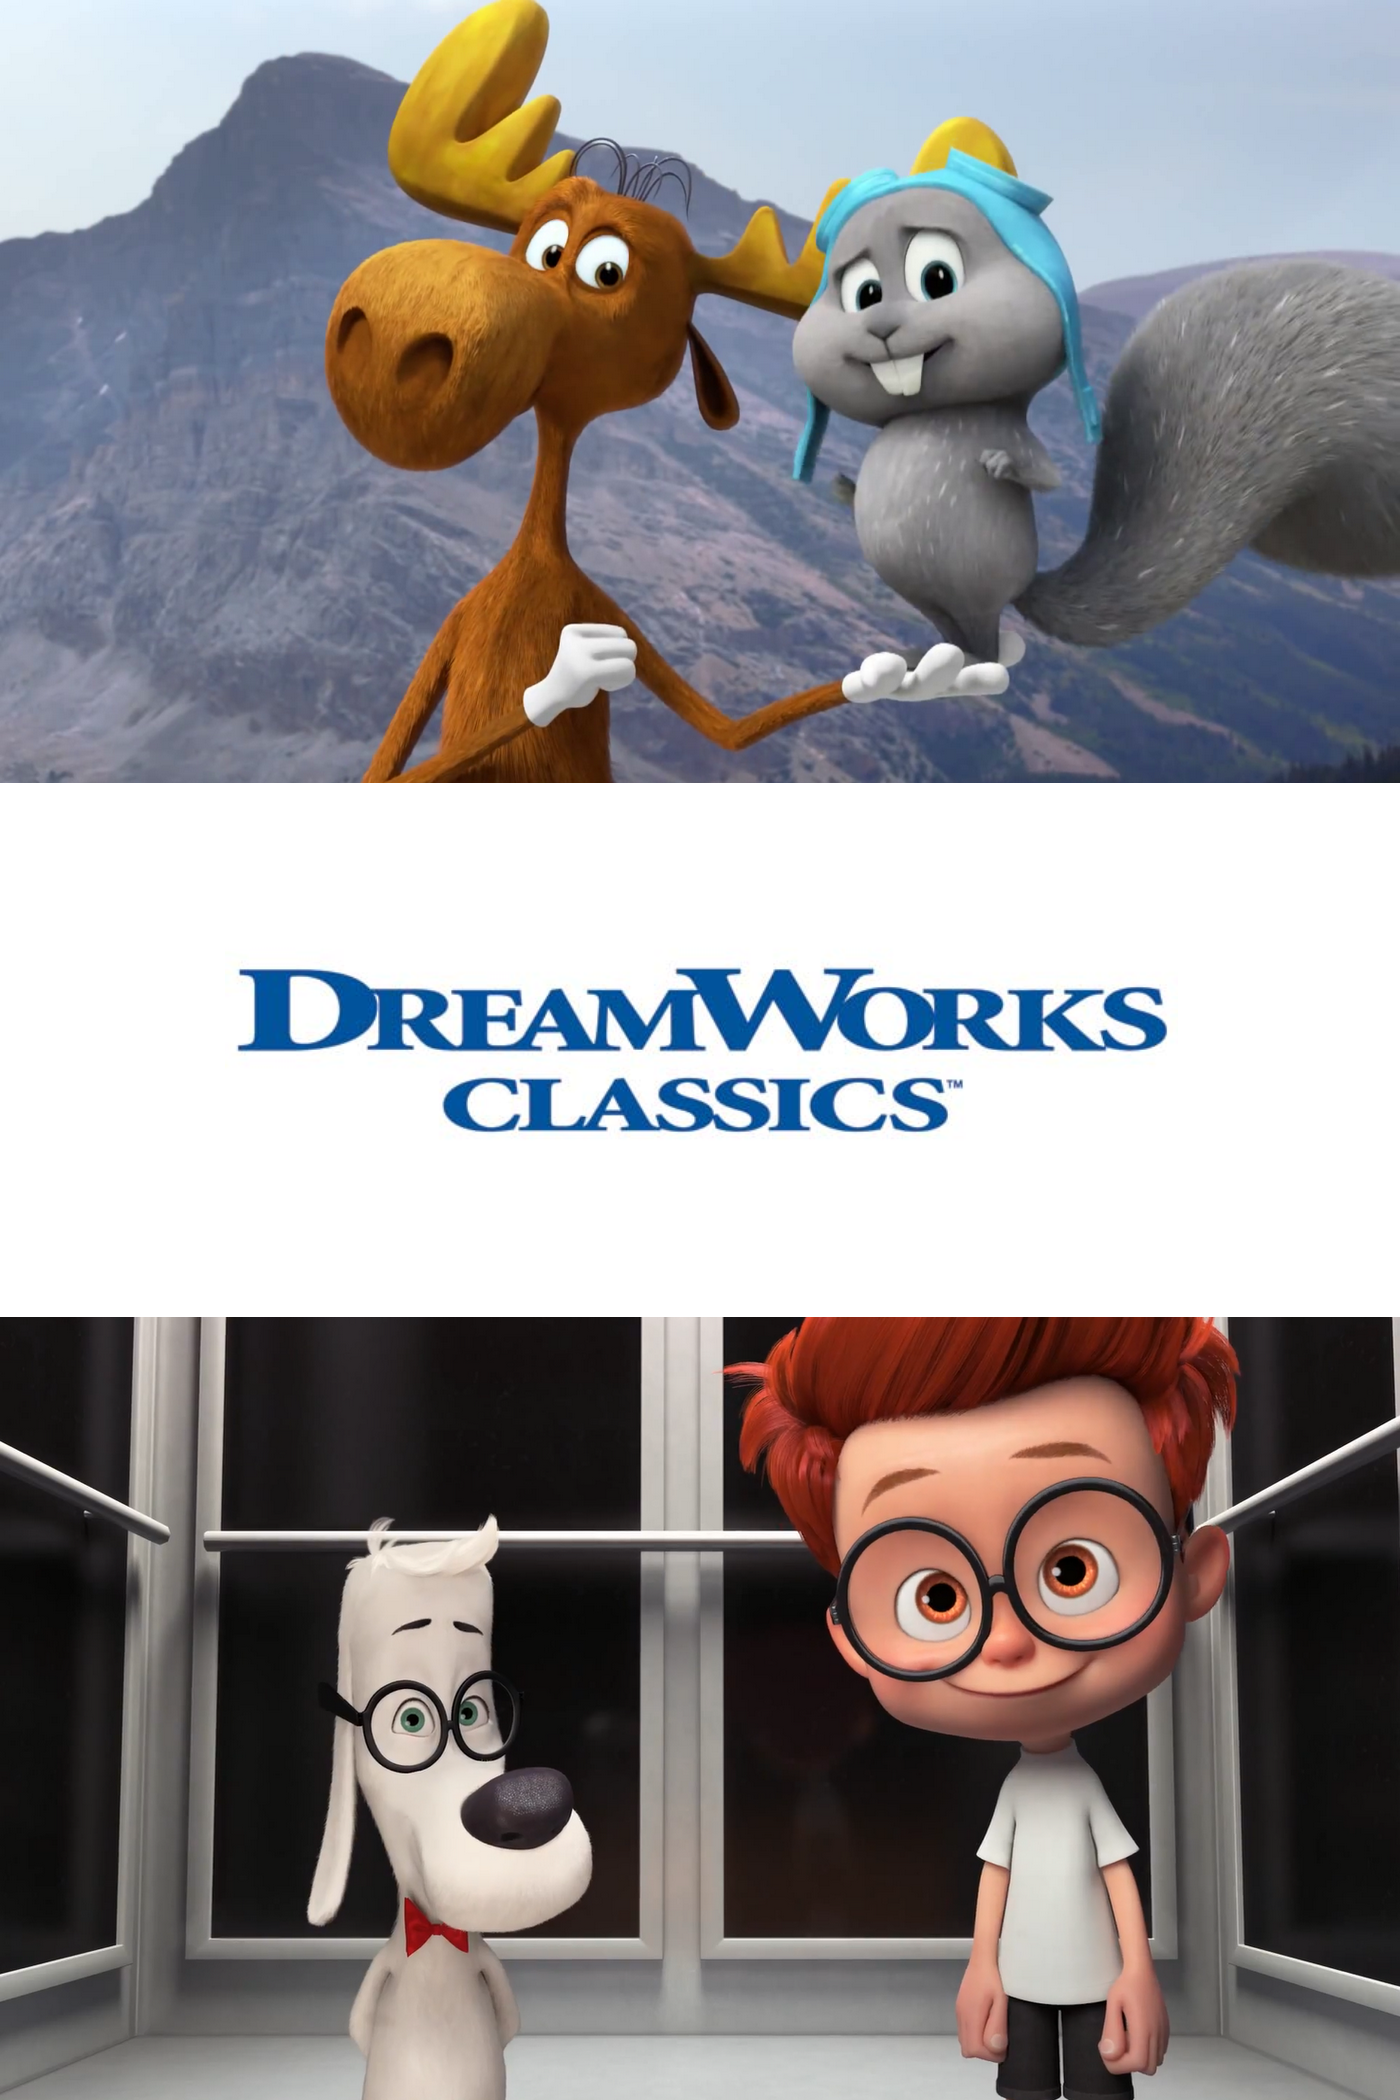 Dreamworks Classics Dreamworks Animation Wiki Fandom